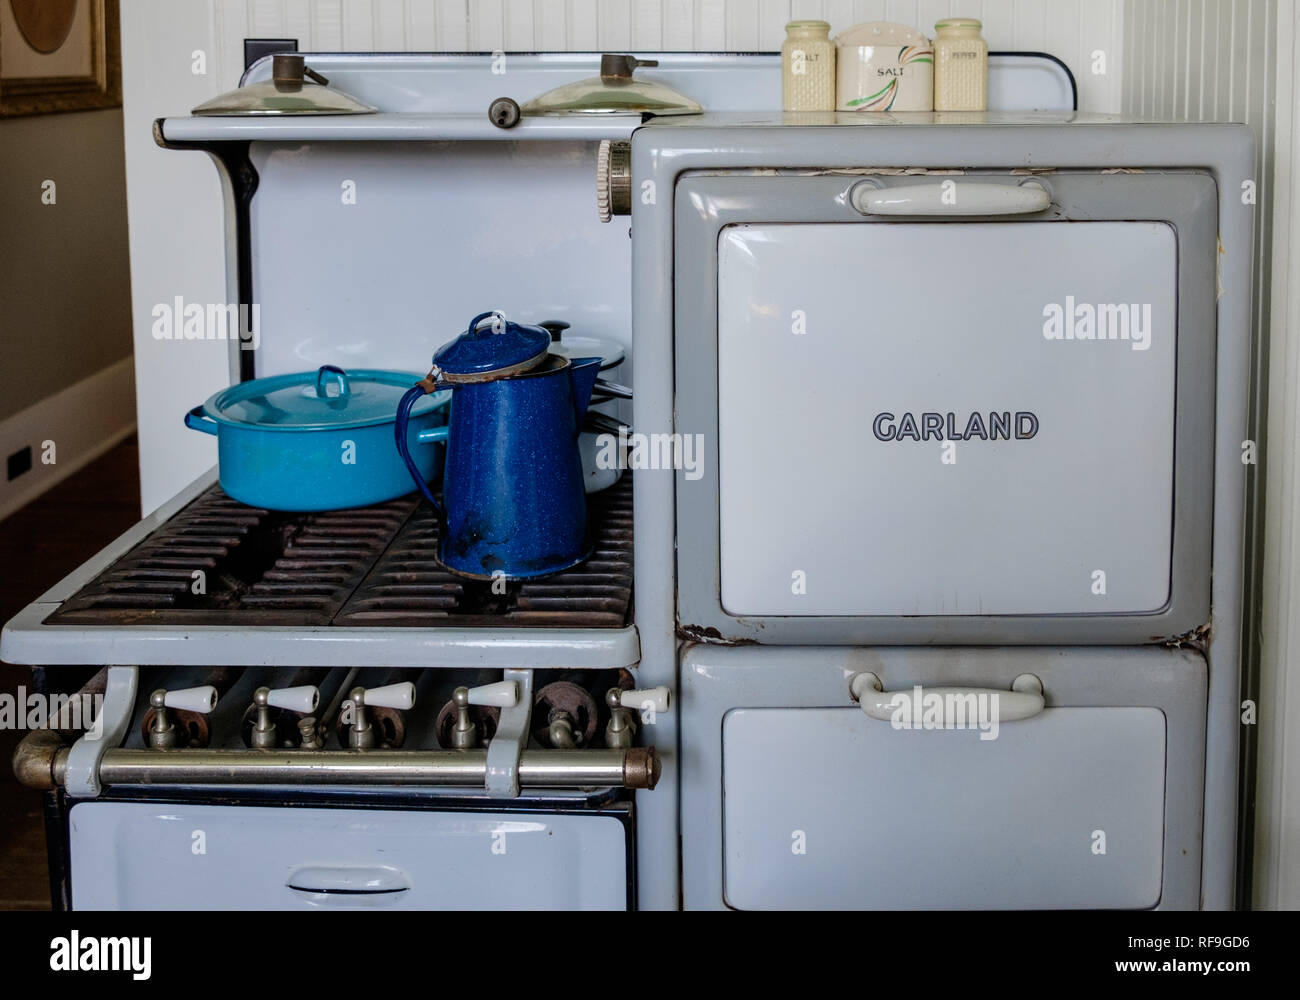 Antique Garland cuatro quemadores de gas estufa de porcelana blanca con puertas y piernas. Dos azul y un esmalte blanco vintage utensilios de cocina. Foto de stock